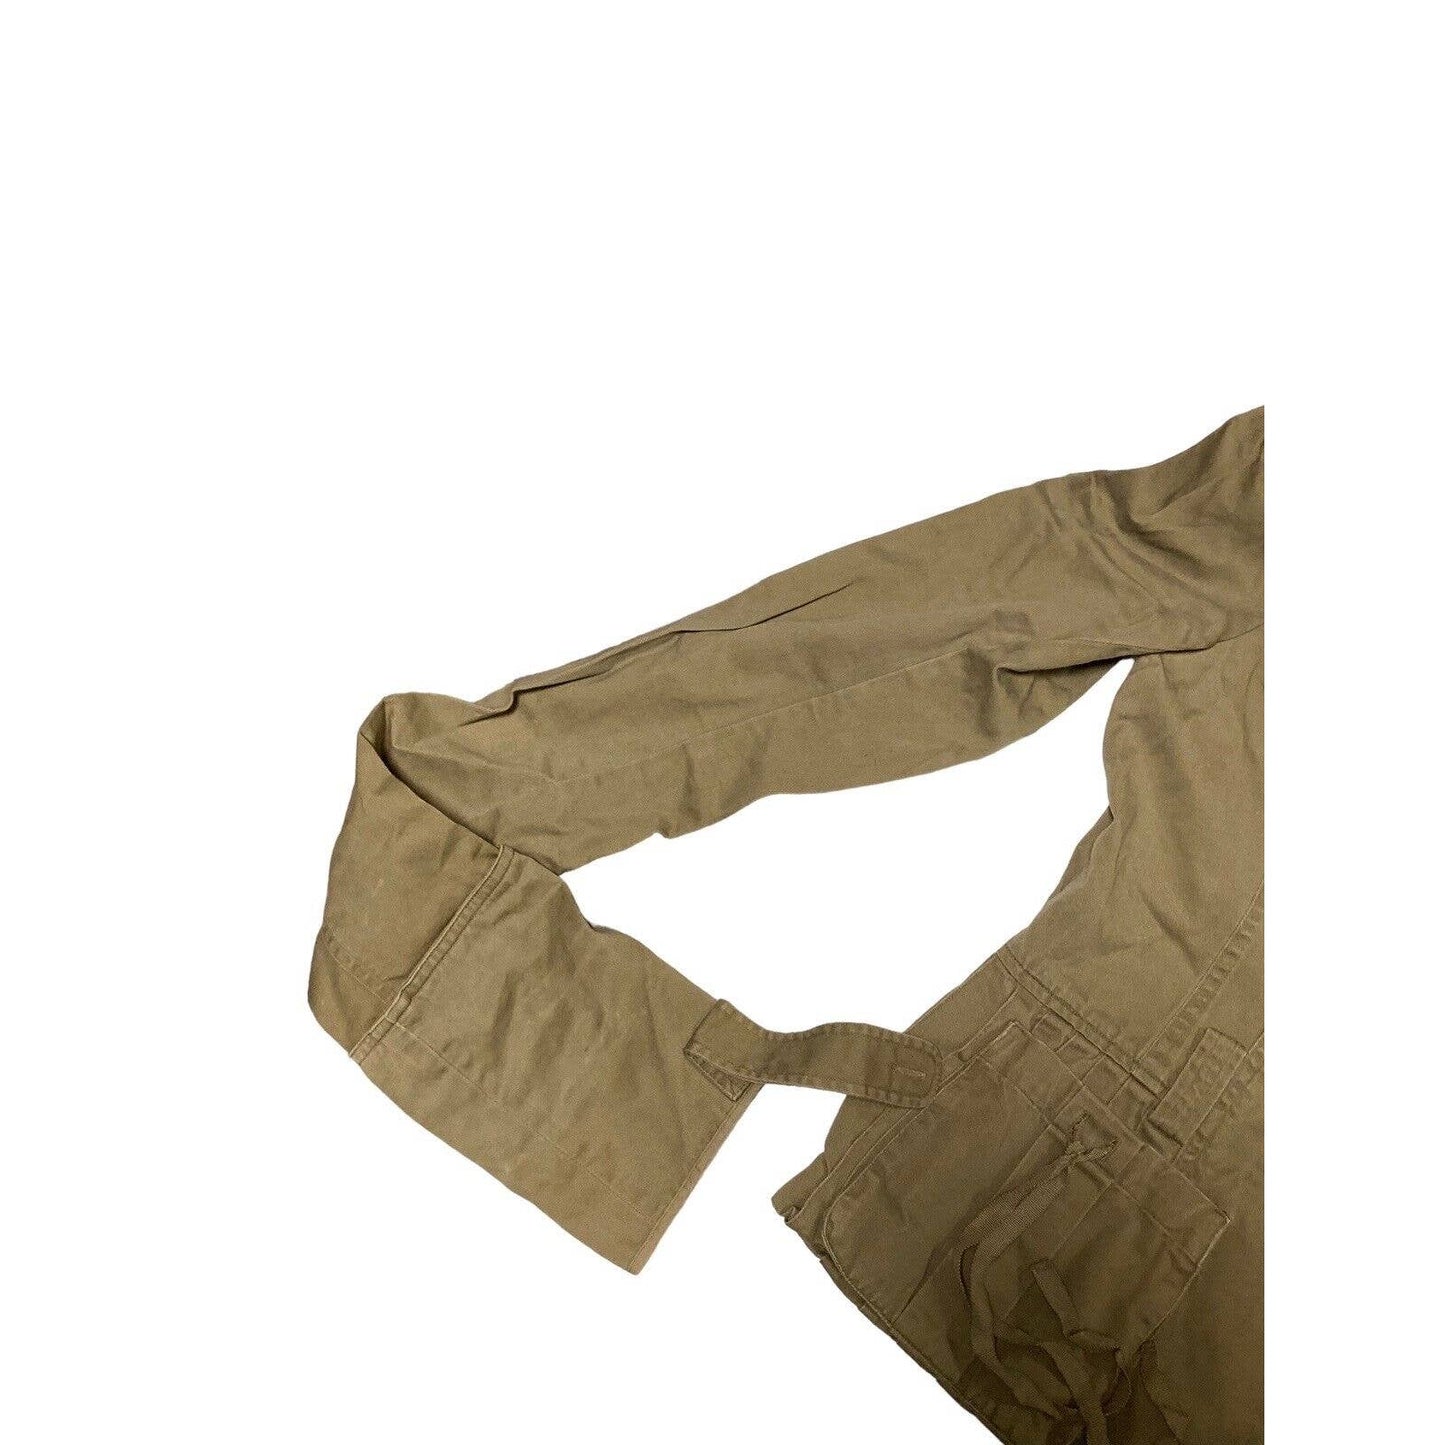 Diane Von Furstenberg 100% Cotton Brown Blazer Utility Jacket Size 4